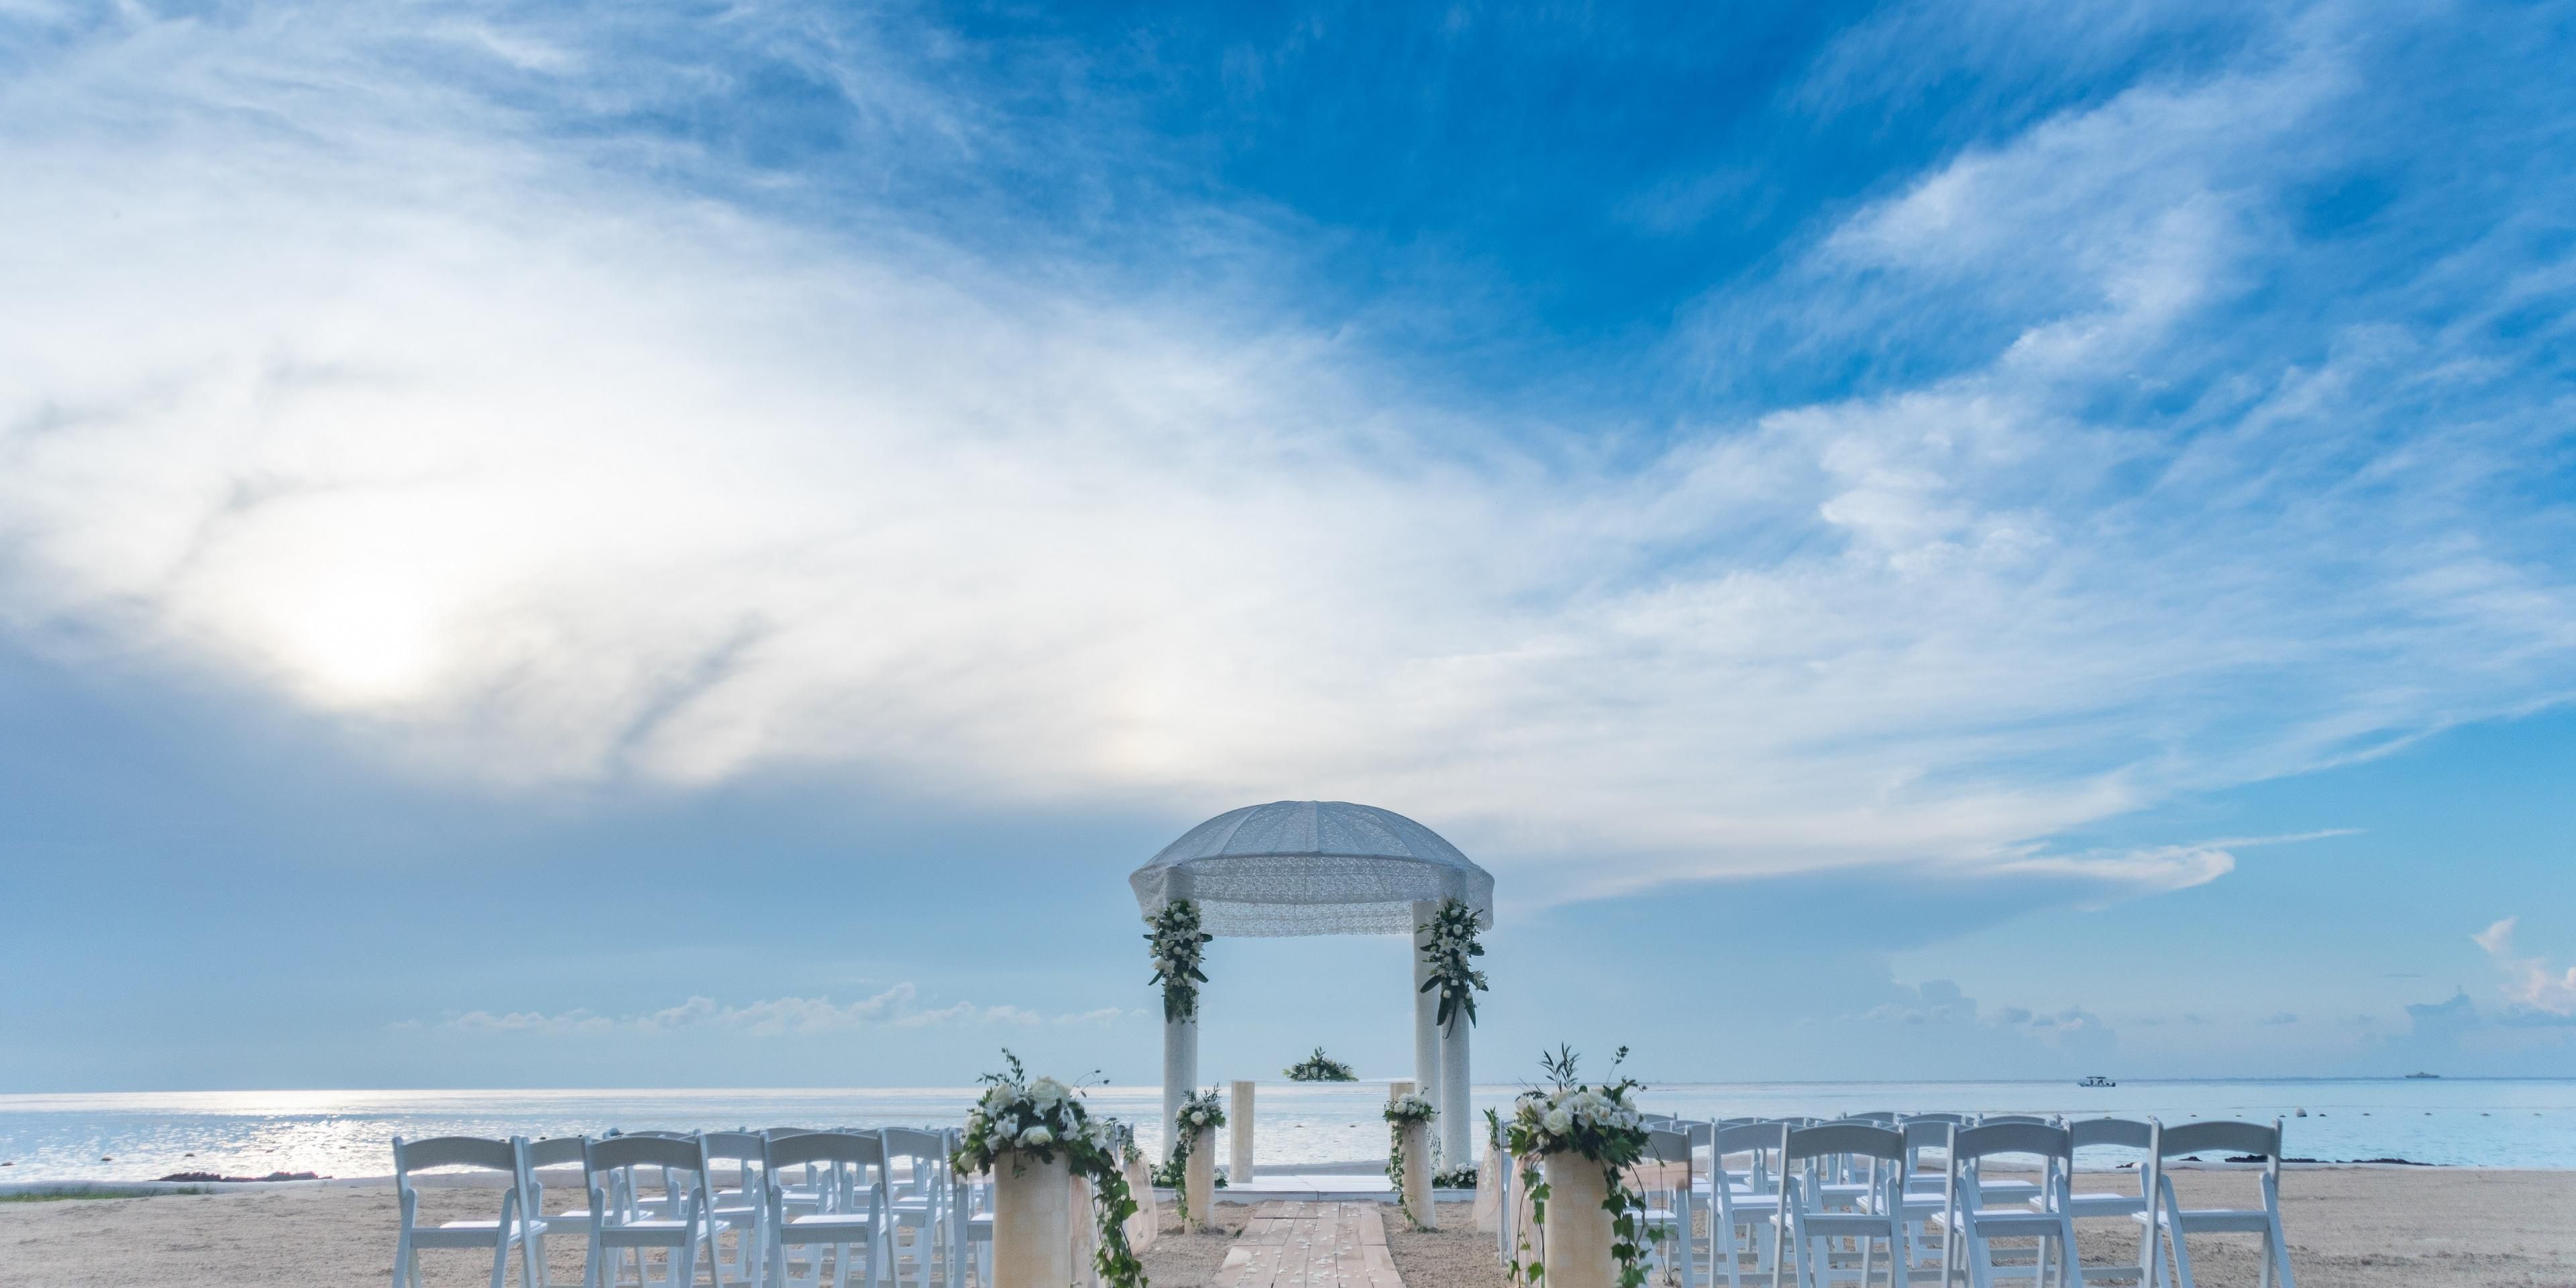 Viva la boda de sus sueños en Cozumel: ¡Emprenda una aventura inolvidable! Descubra un hotel de lujo en Cozumel, México; diseñado con detalles exquisitos para brindar la máxima comodidad. Sumérjase en la fusión de cultura y naturaleza, creando una auténtica y memorable celebración.